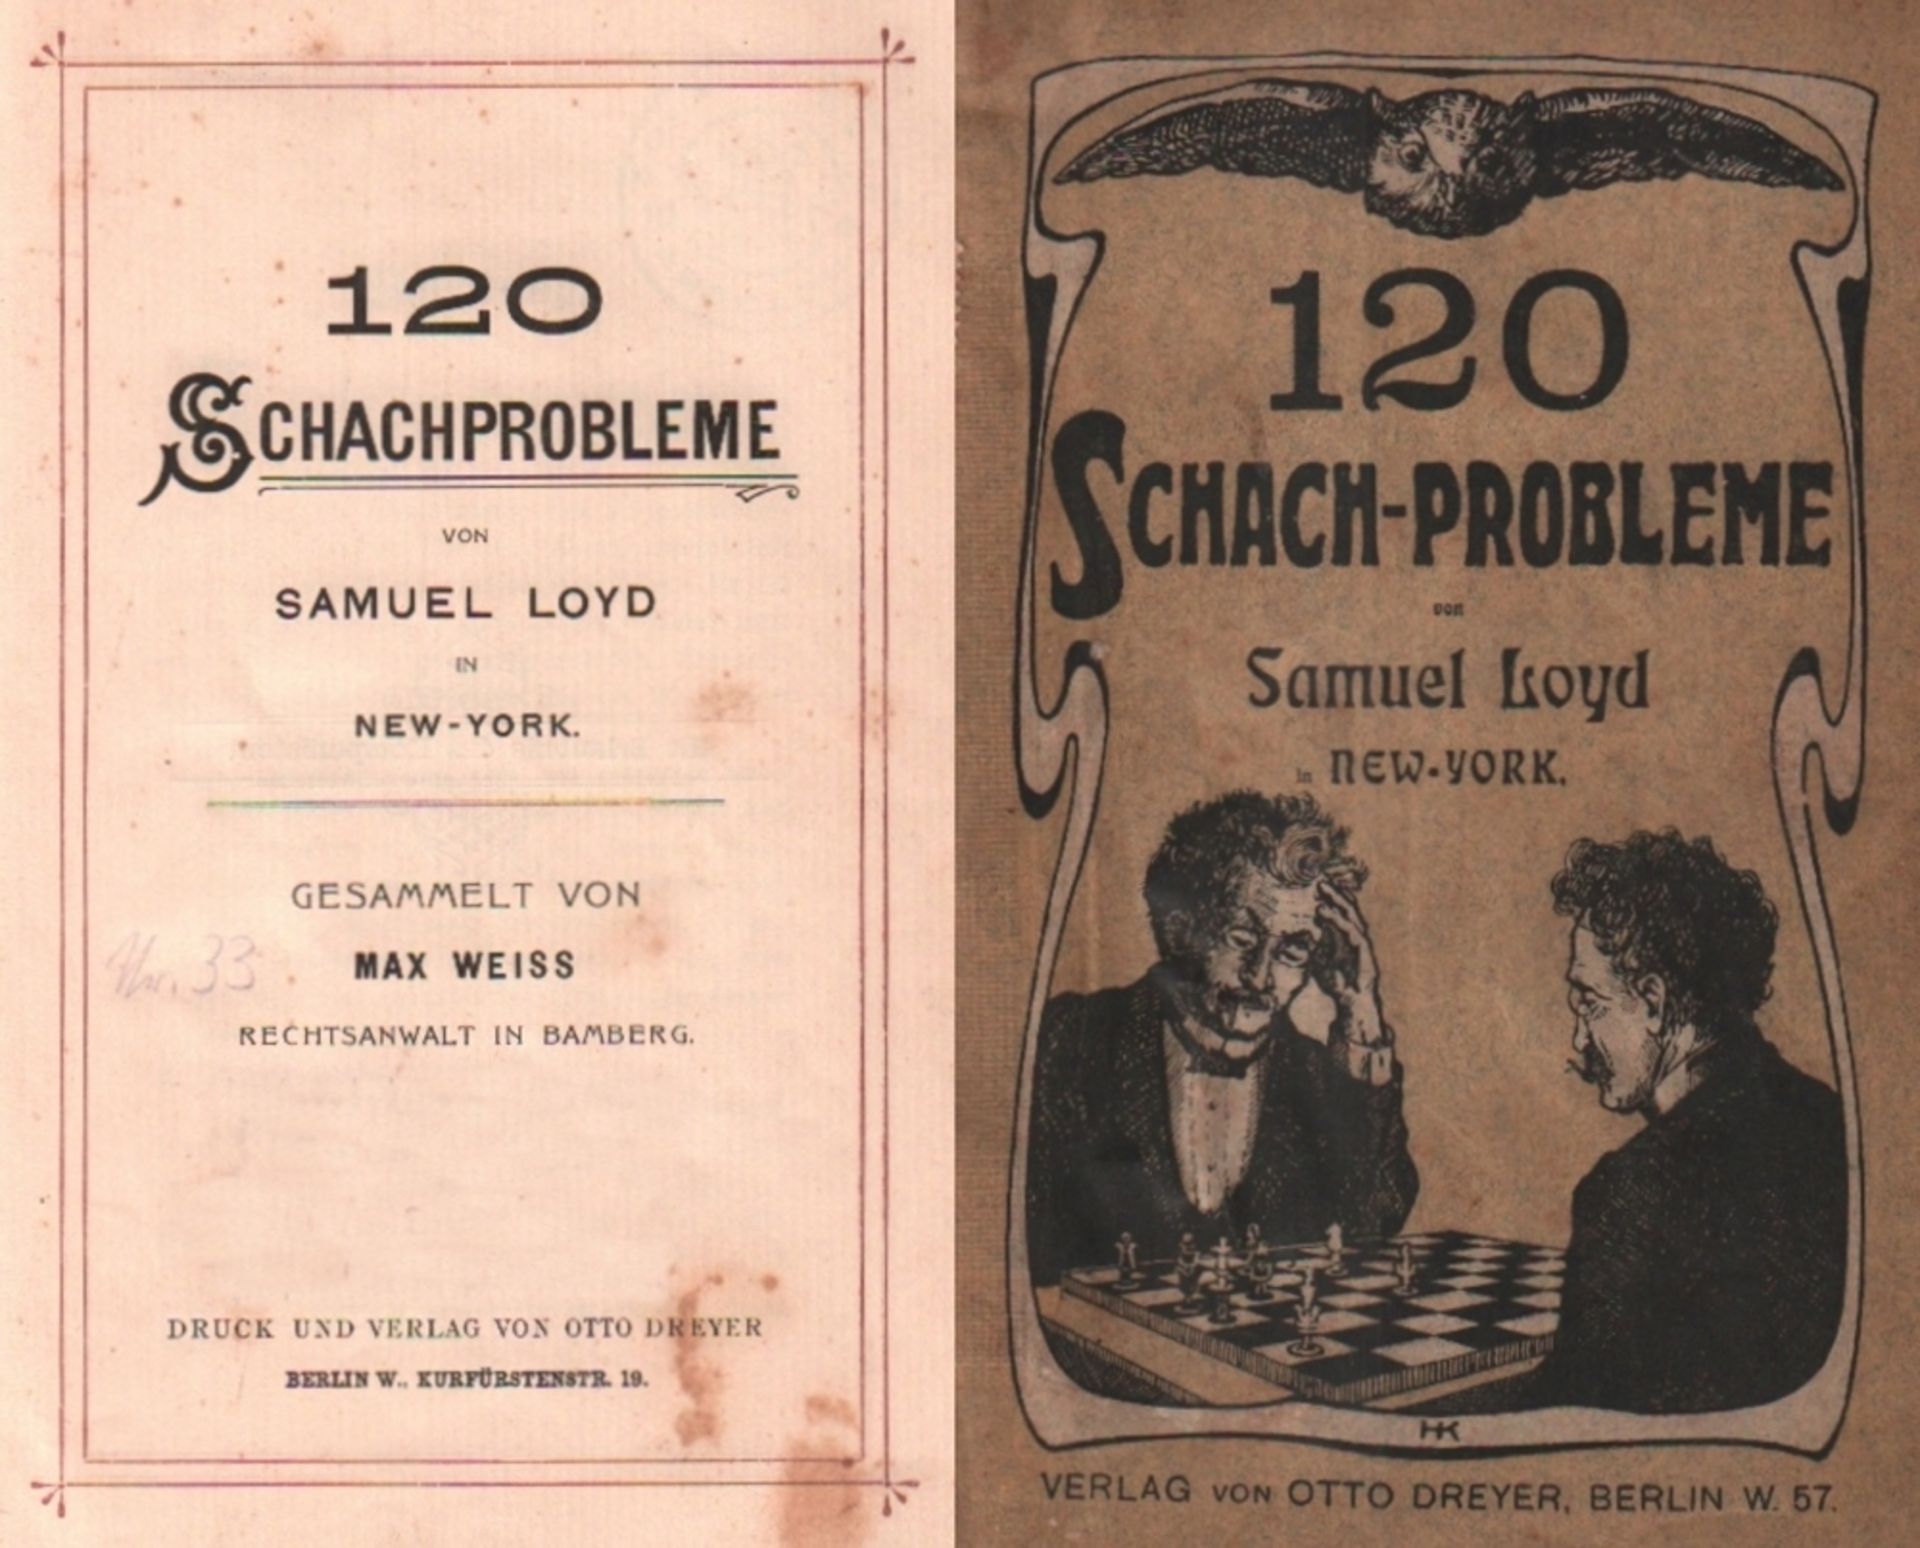 Loyd. Weiß, Max. (Hrsg.) 120 Schachprobleme von Samuel Loyd in New - York. Gesammelt von ... Berlin,